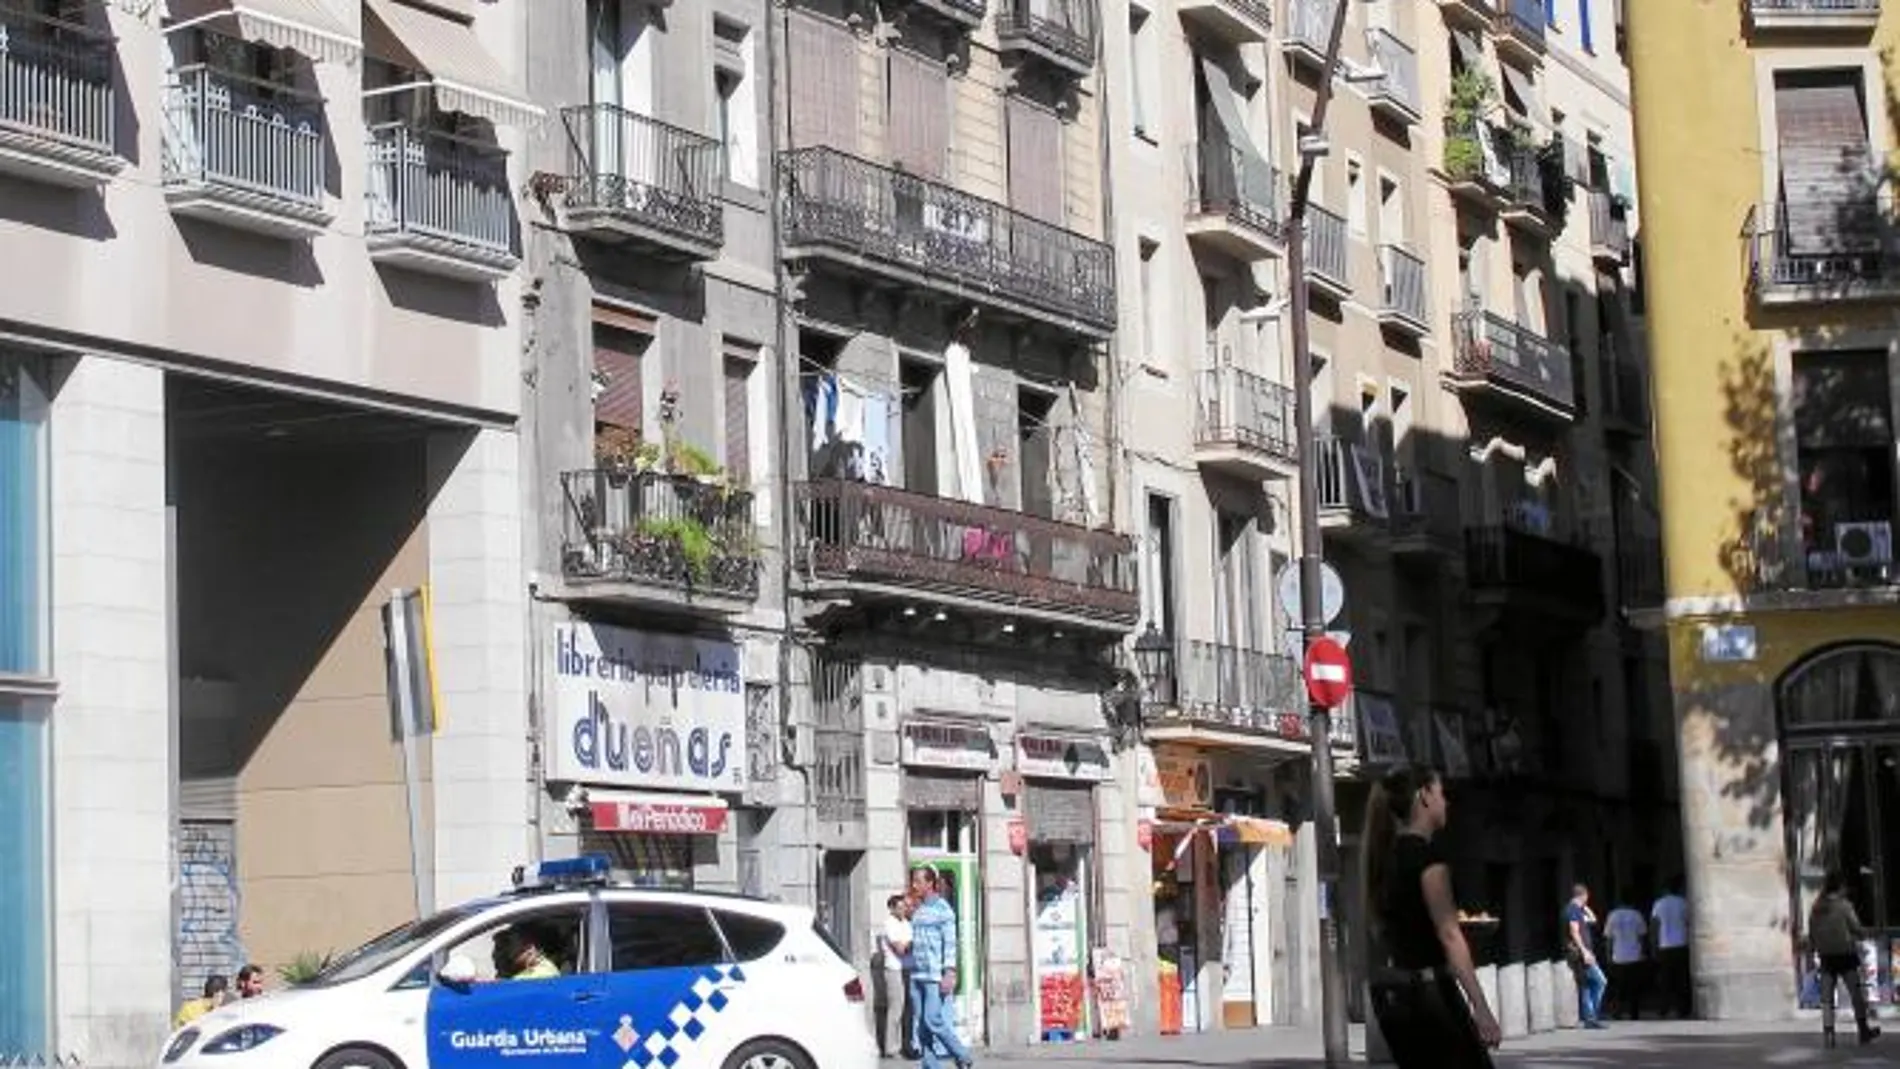 En la imagen, un coche patrulla de la Guardia Urbana de Barcelona